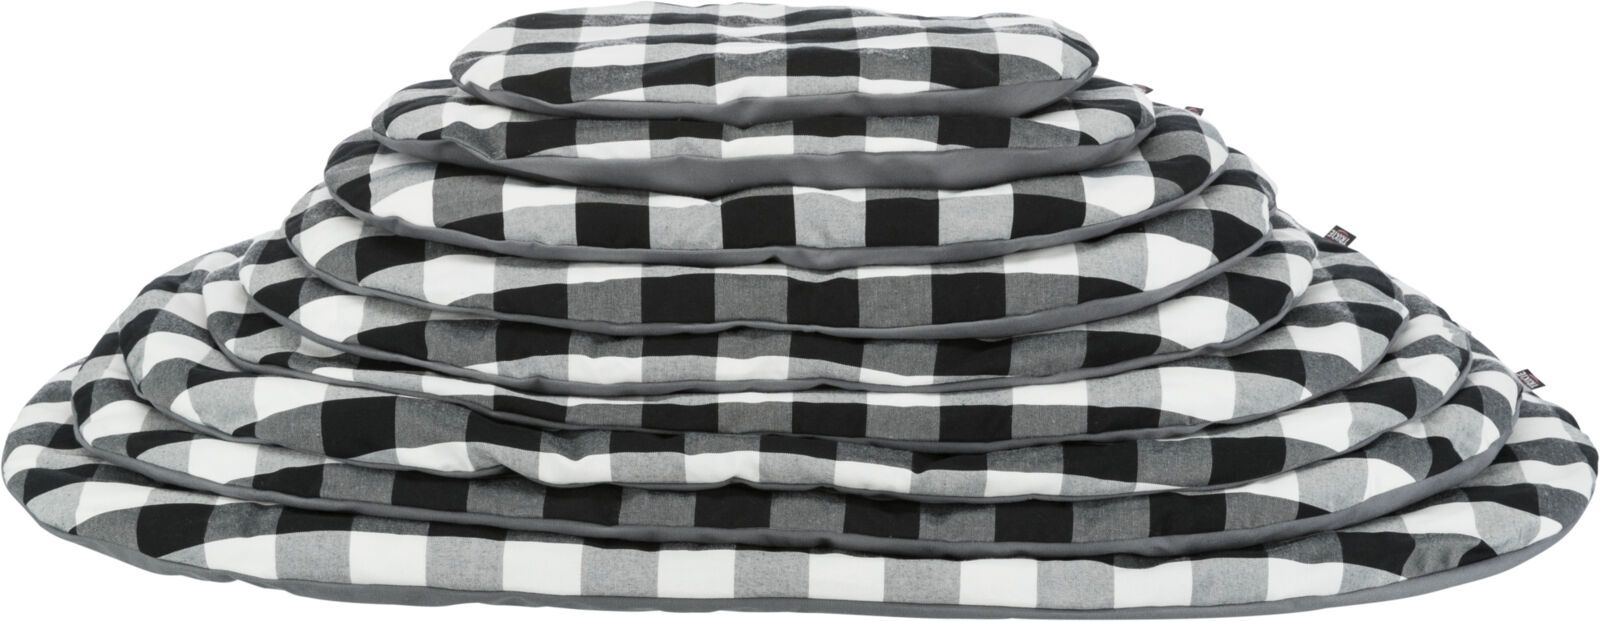 TRIXIE Kissen Scoopy, oval, 54 x 35 cm, schwarz / weiß / grau